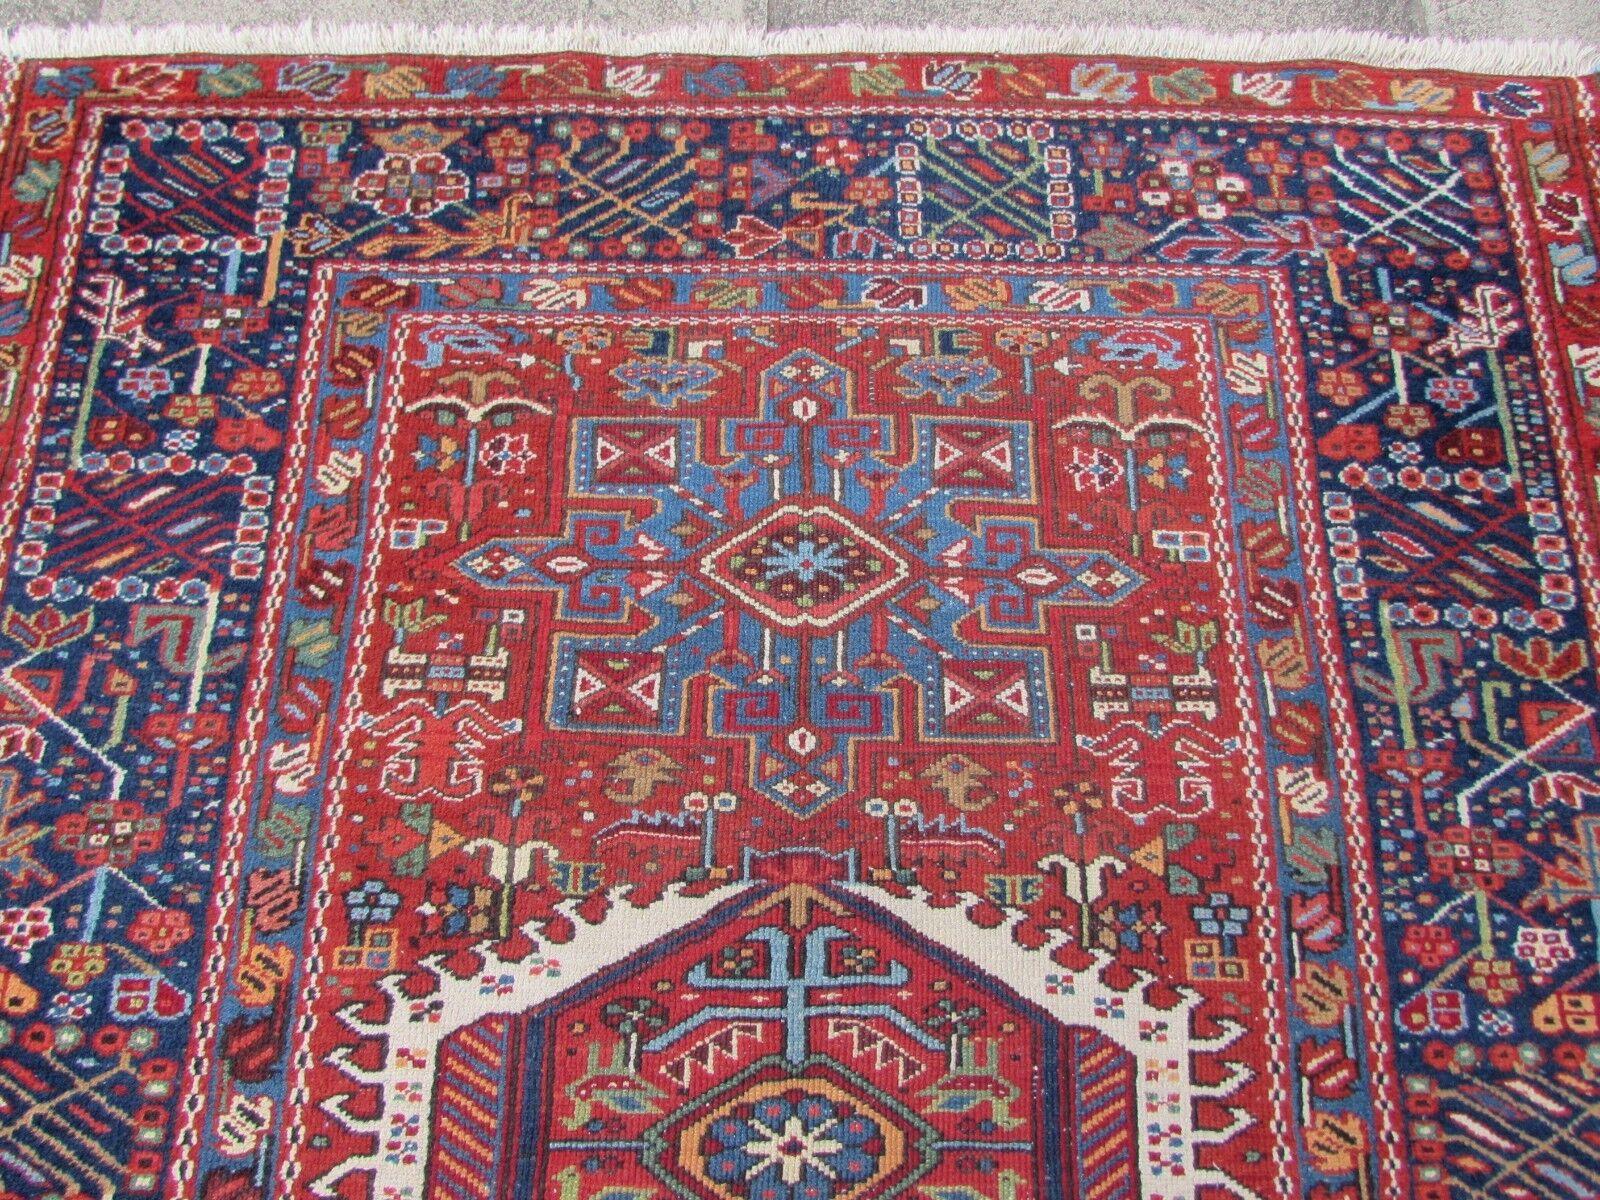 Erhöhen Sie die Ästhetik Ihres Wohnraums mit diesem handgefertigten antiken Karajeh-Teppich im persischen Stil, einem fesselnden Stück aus den 1920er Jahren, das sowohl Geschichte als auch Schönheit ausstrahlt.

Wesentliche Merkmale:

Größe: Mit den